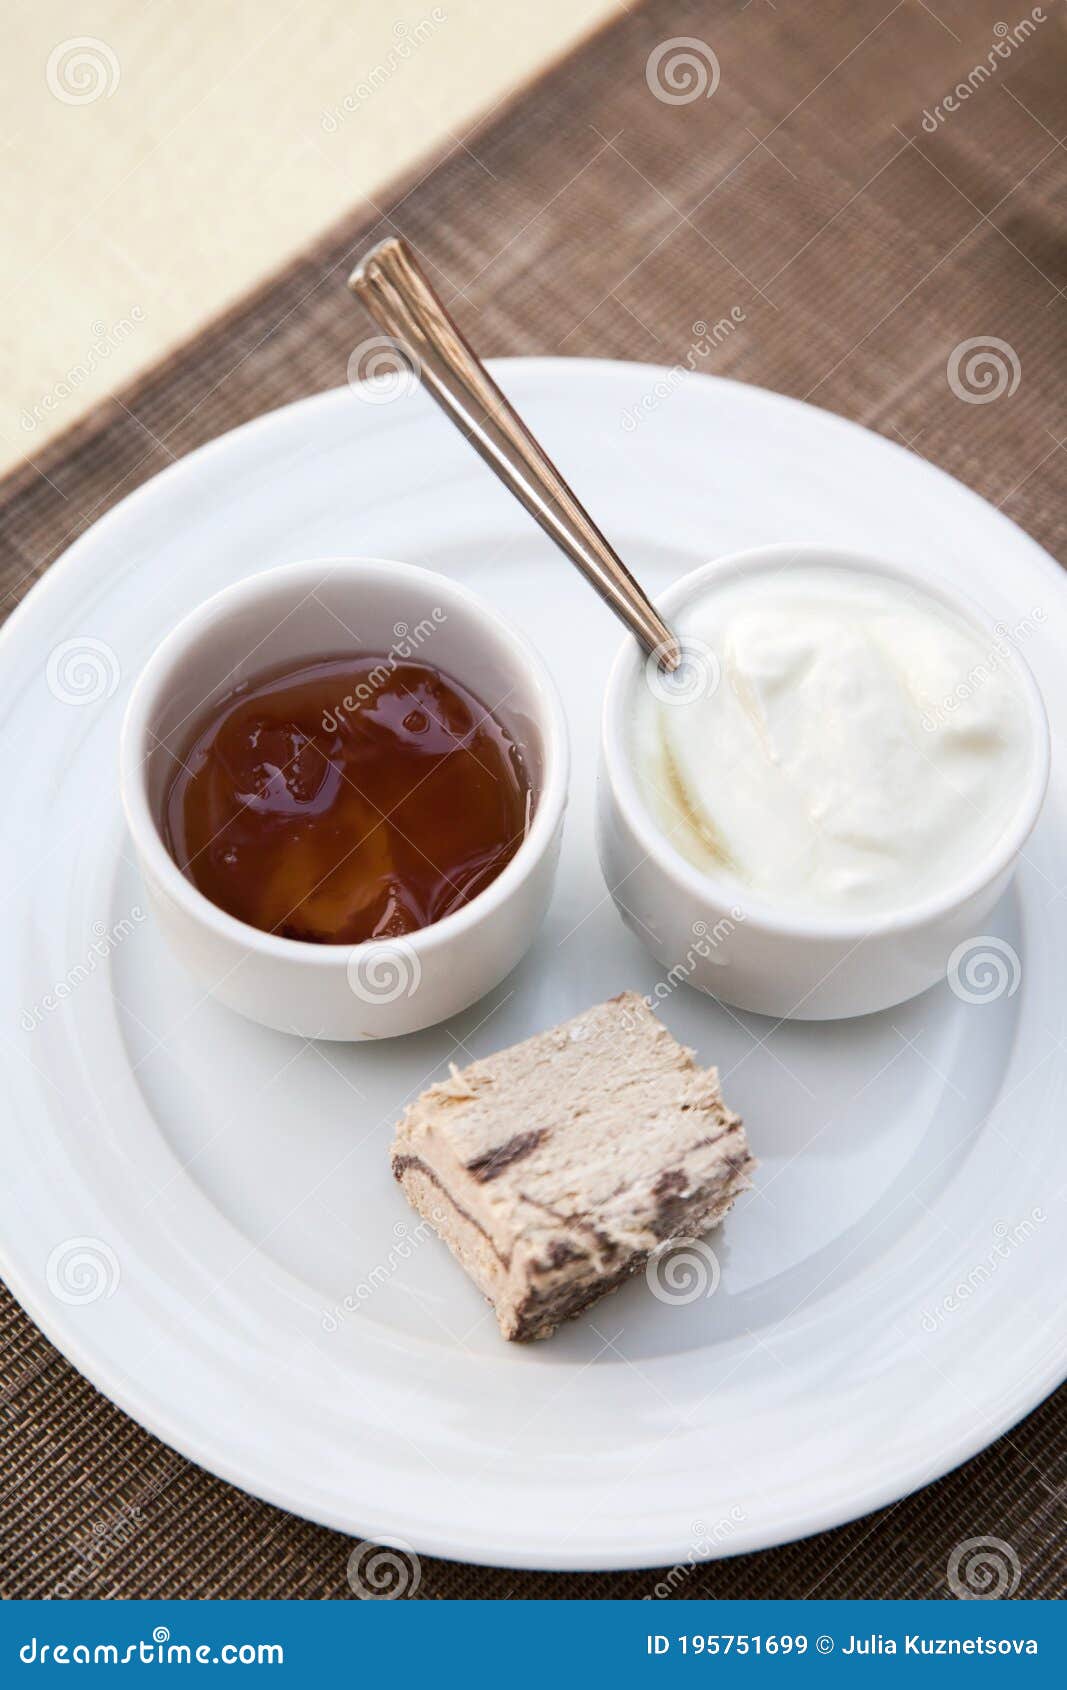 Frühstück Jogurt Und Marmelade Stockbild - Bild von essen, platte ...